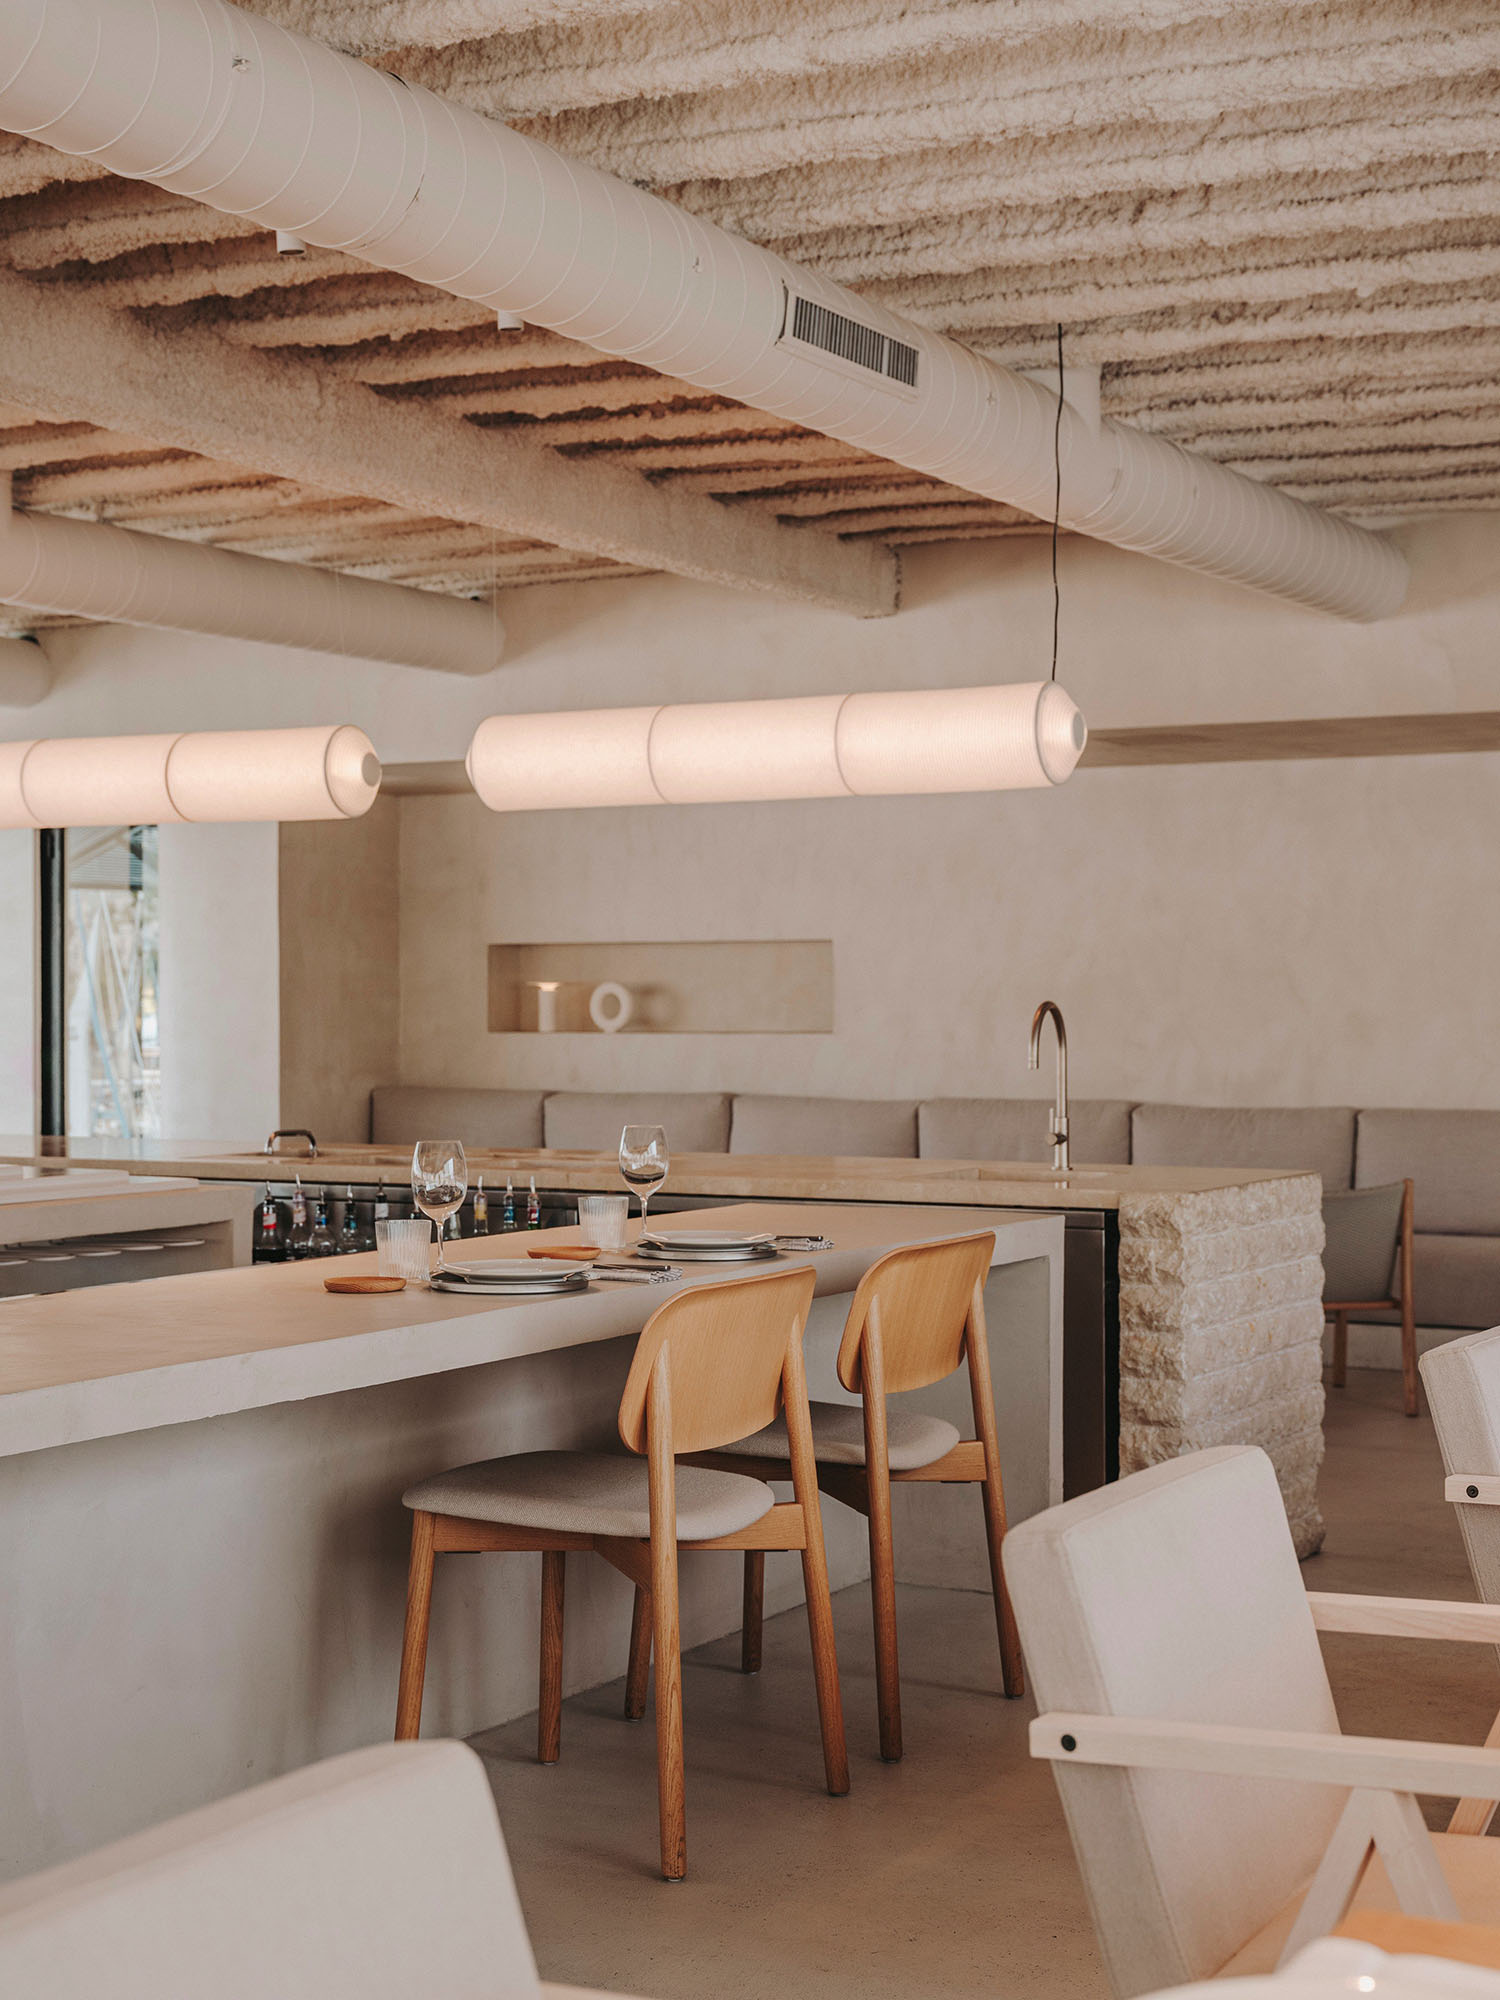 餐厅设计,Isern Serra Studio,休闲餐厅设计,巴塞罗那,现代风格餐厅设计案例,中性美学,海鲜酒吧餐厅